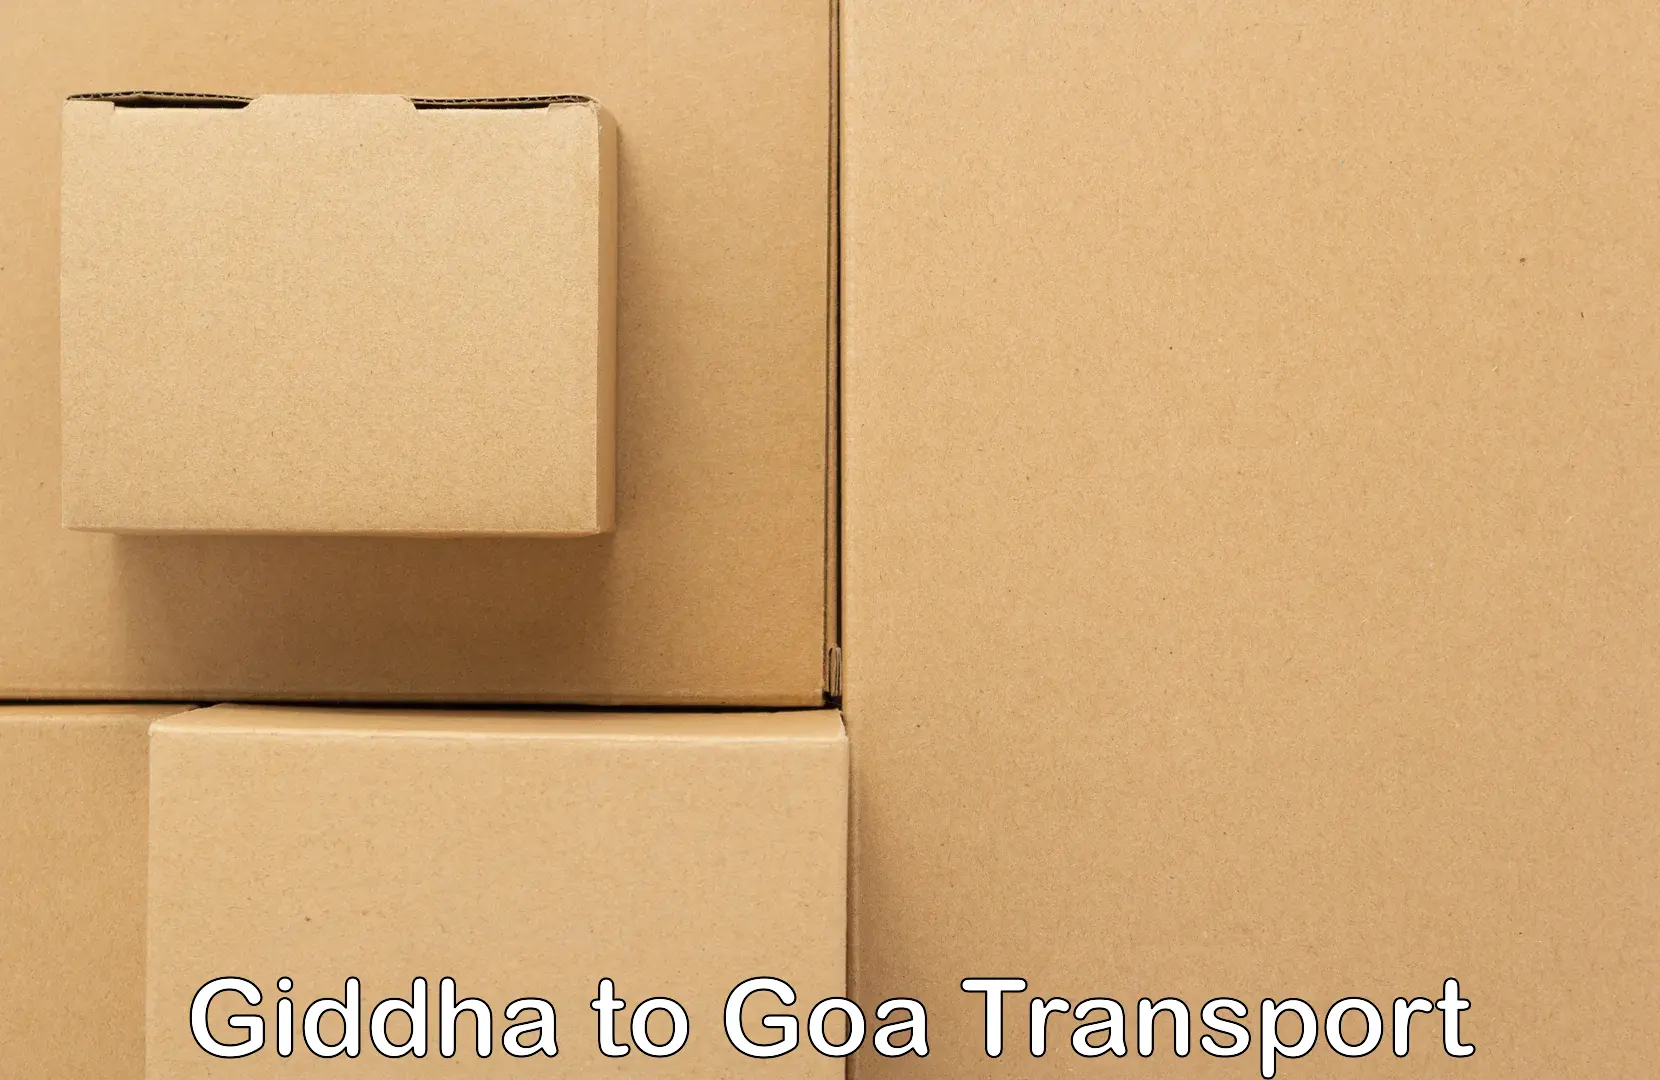 Transport services Giddha to Panjim